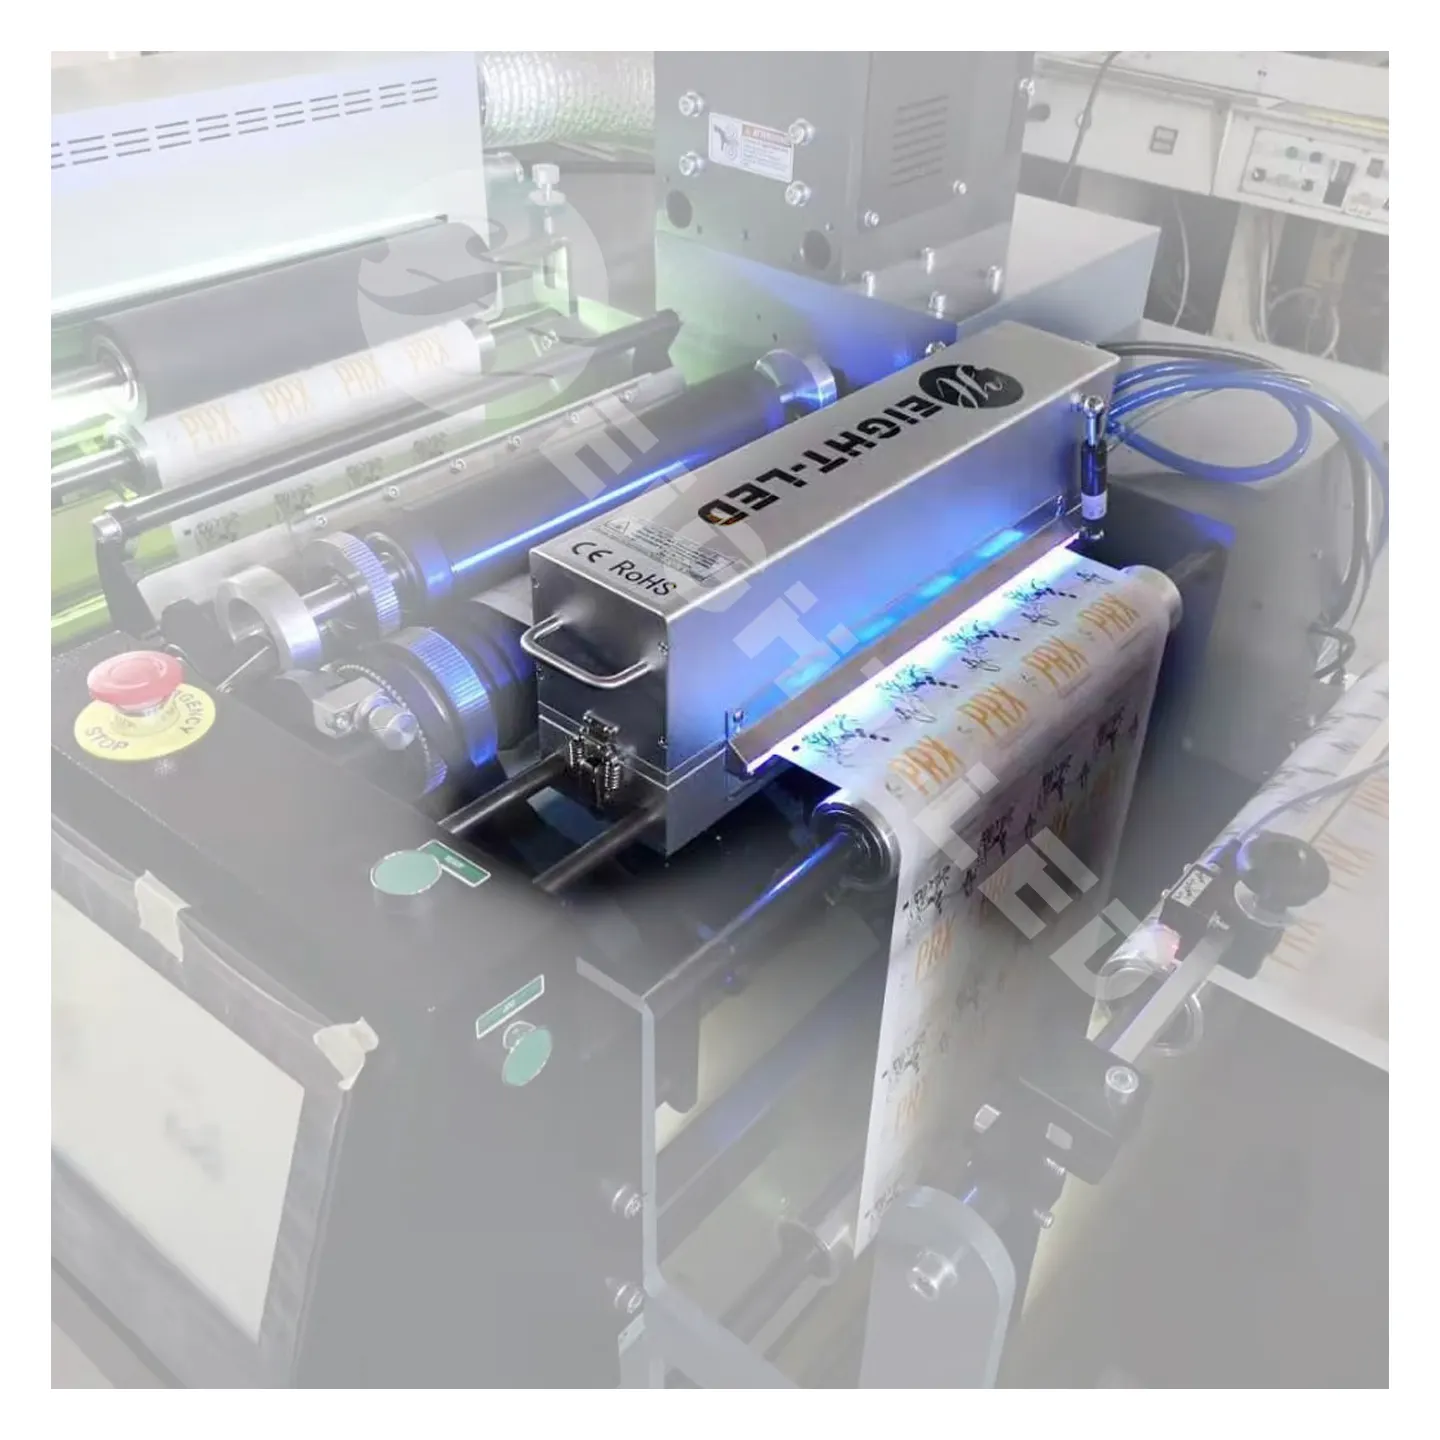 بيع المصنع نظام معالجة بليد داخل مصباح ليد بالأشعة فوق البنفسجية للطباعة الرقمية